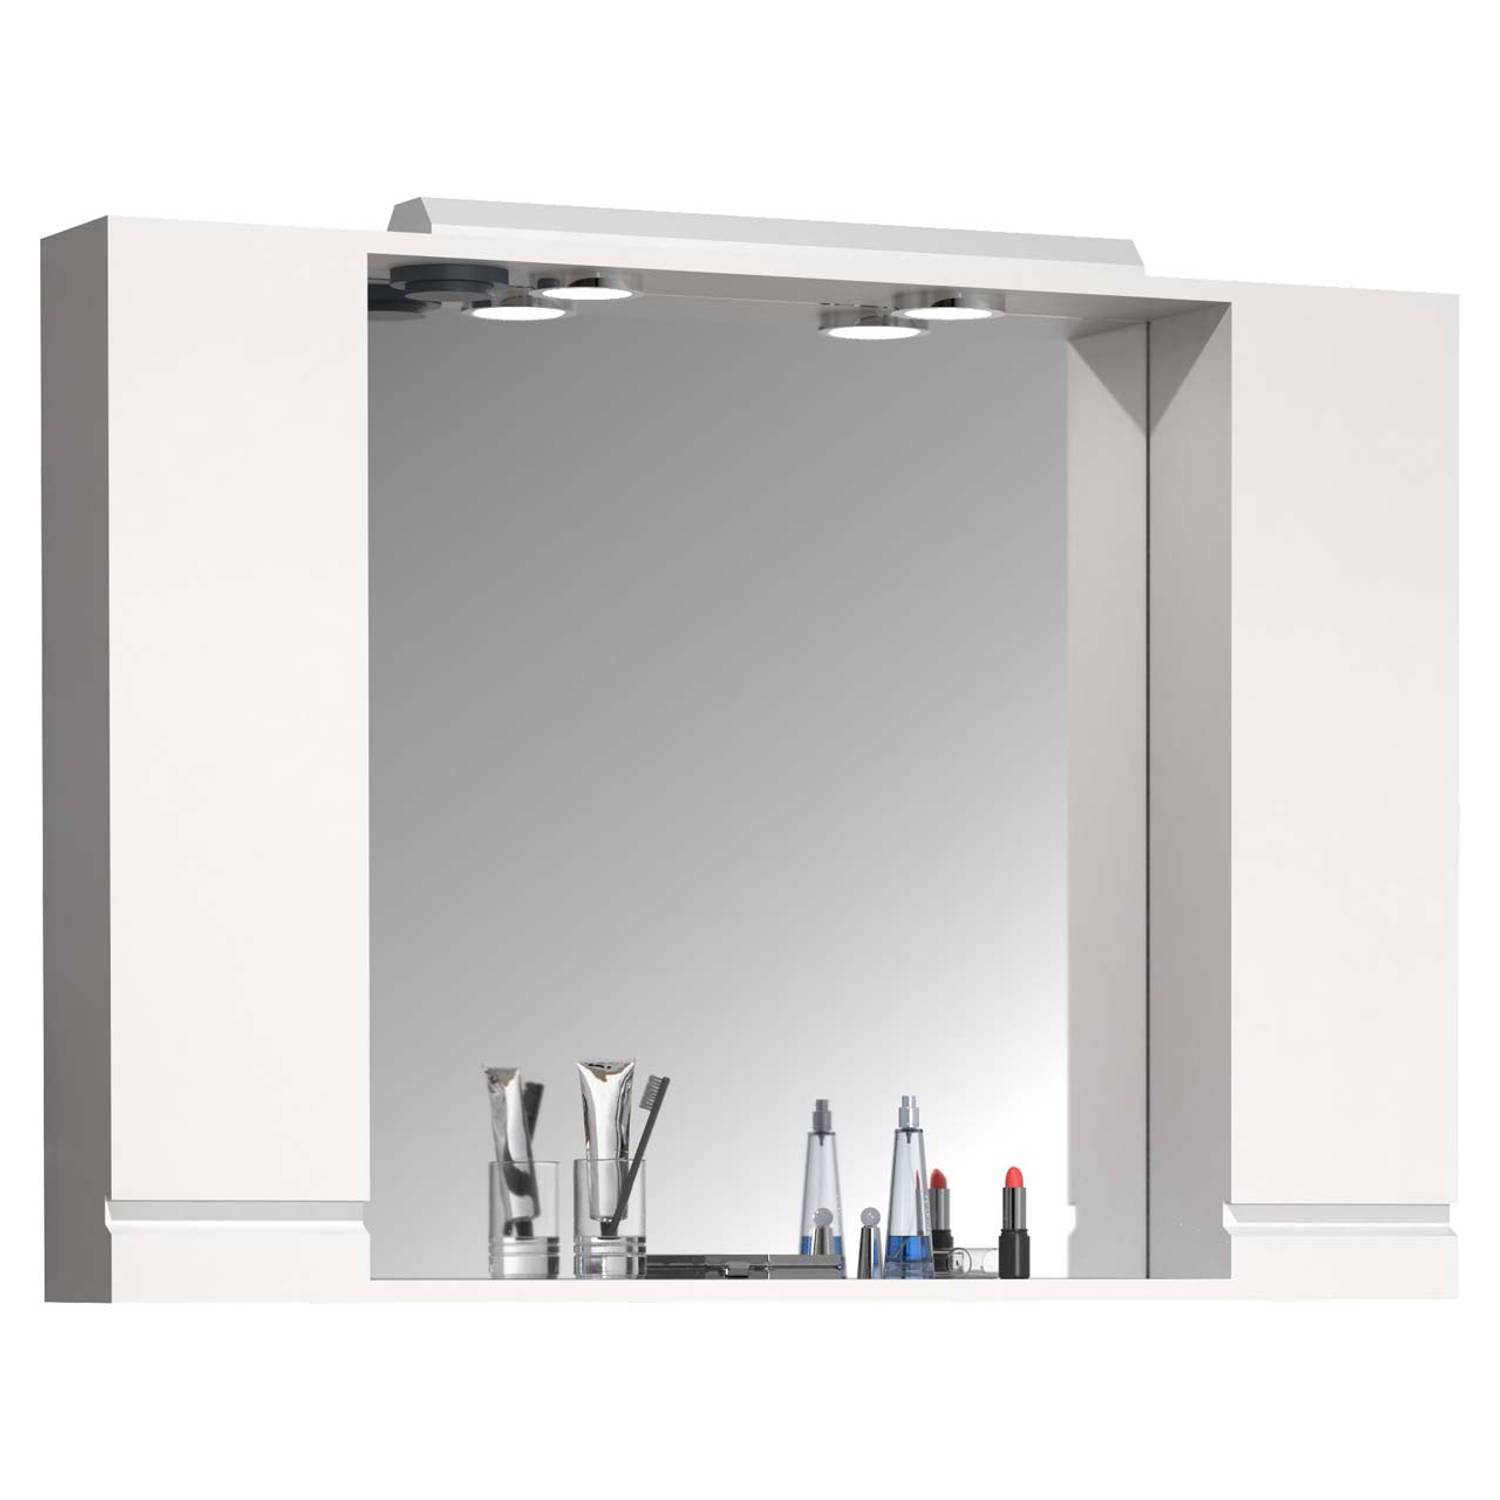 VCM Badspiegel Wandspiegel Breite 100 cm Hängespiegel Spiegelschrank Badezimmer Drehtür grifflos Beleuchtung Silora XL